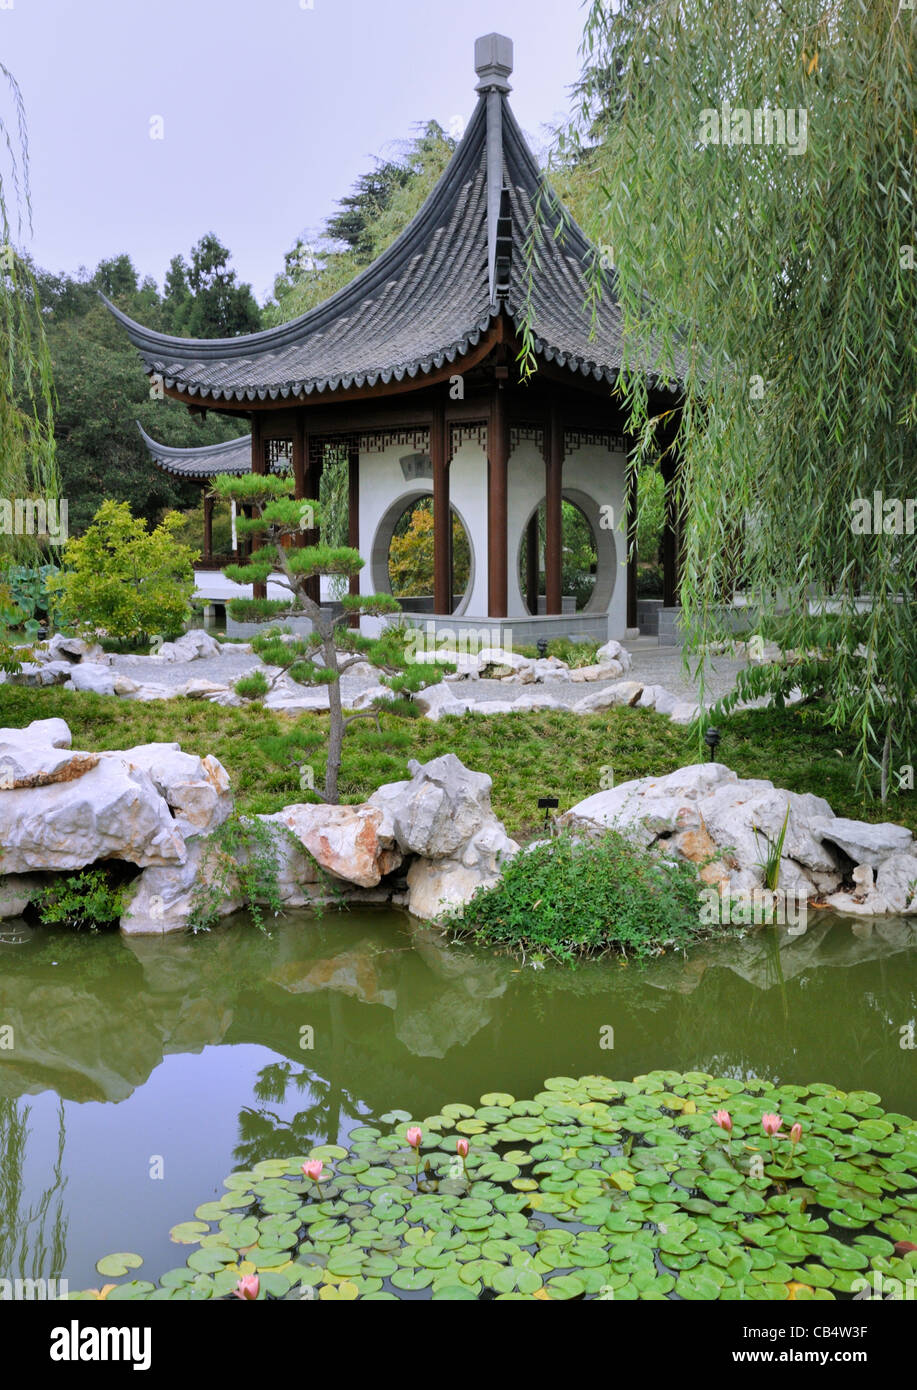 Terrasse de l'Jade miroir, jardin chinois, le Jardin botanique de Huntington. Les ouvertures circulaires imiter la lune Banque D'Images